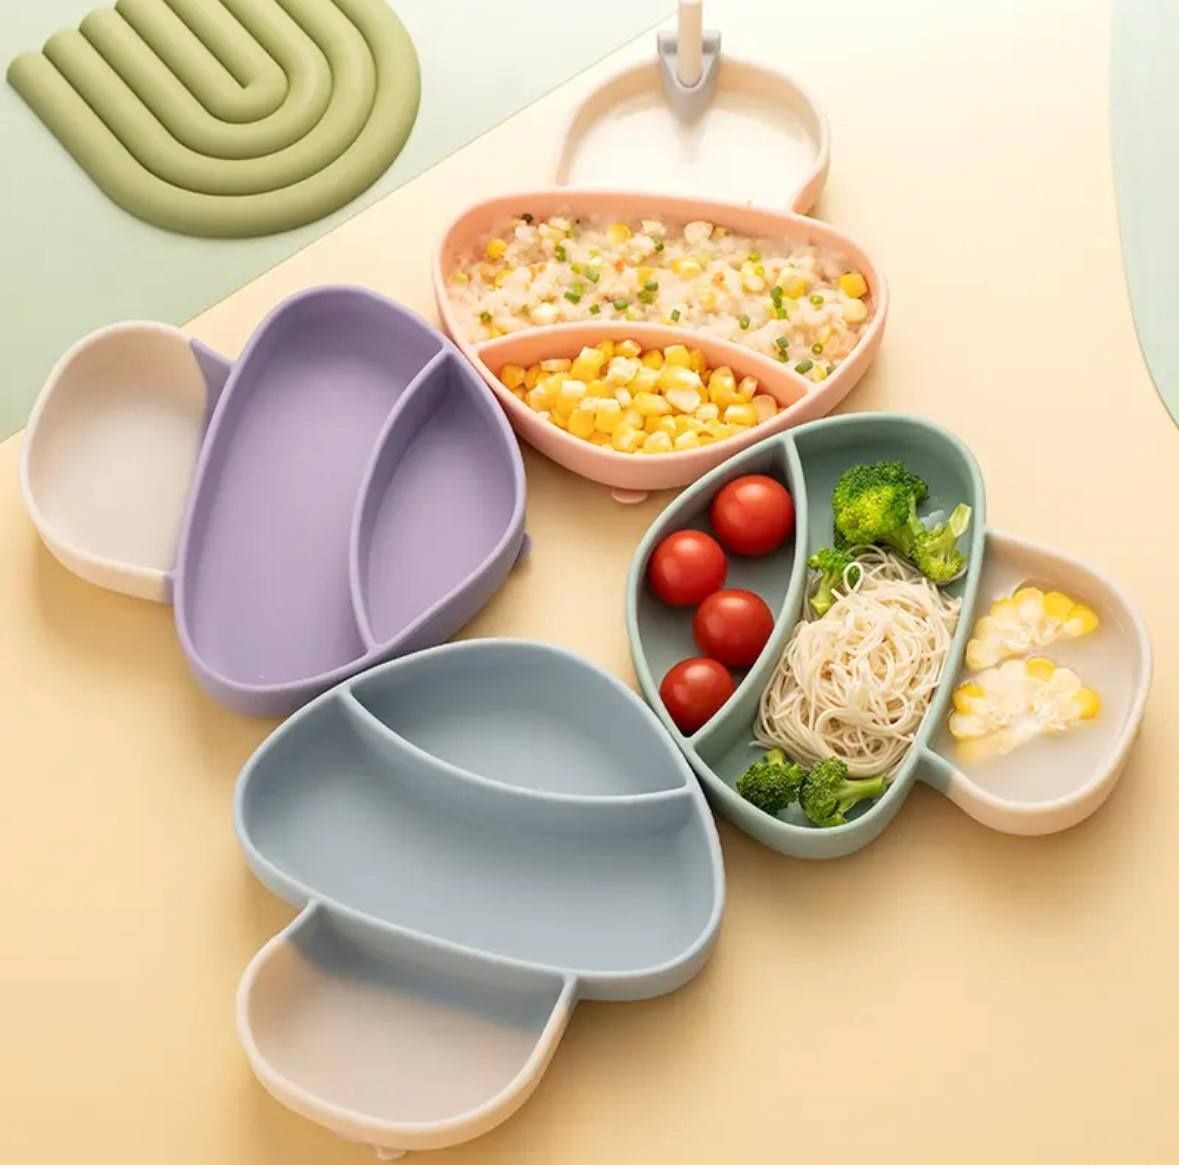 Детская посуда для кормления малышей. Секционная тарелка 5 предметов